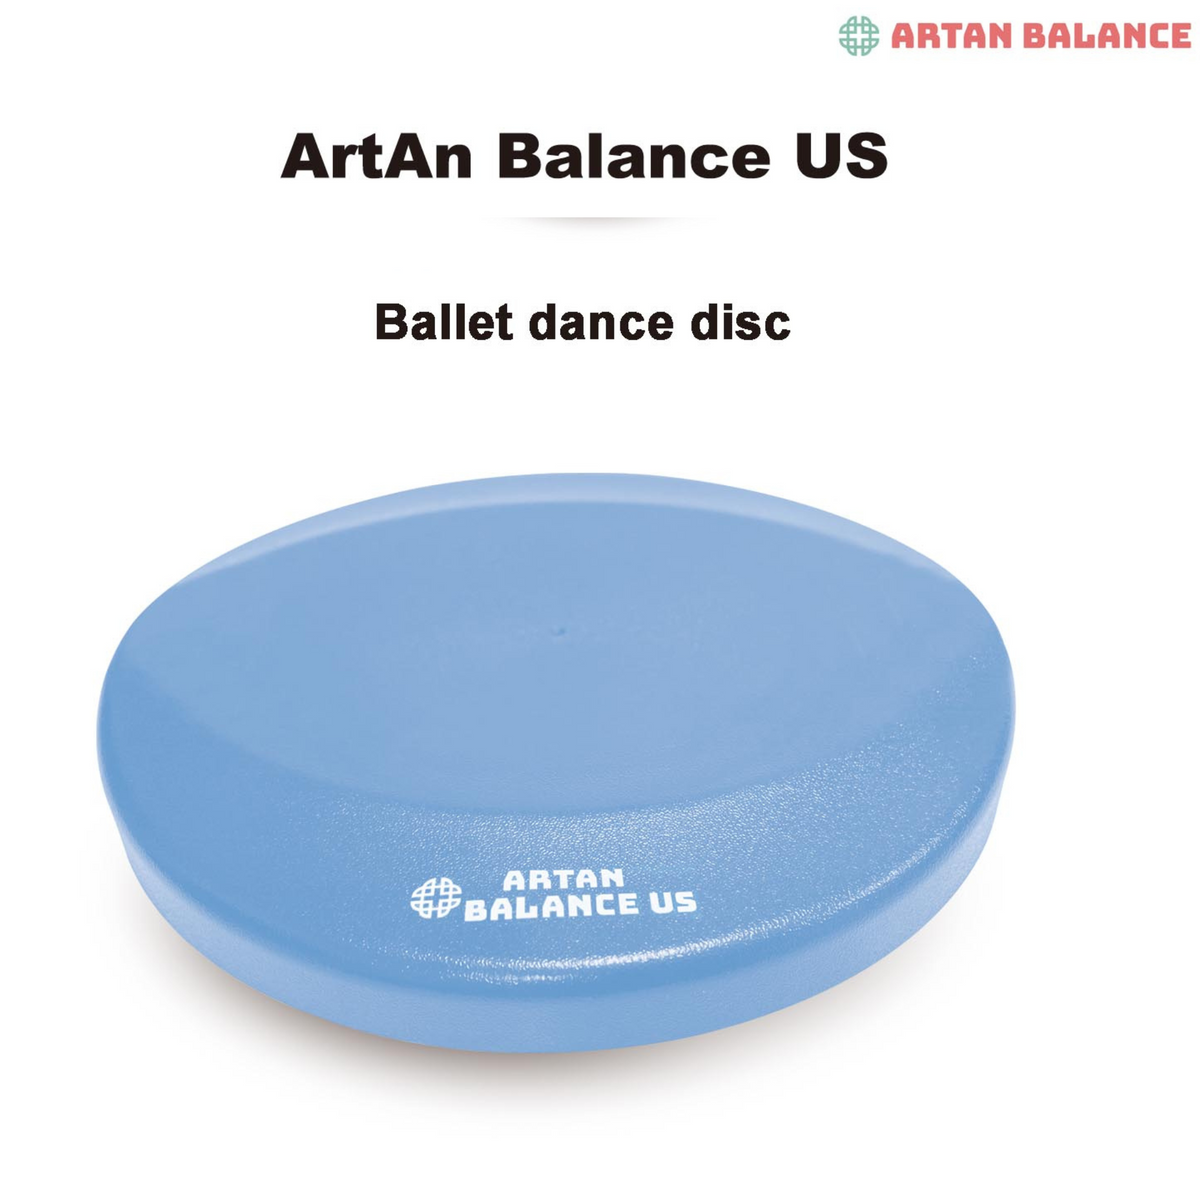 Artan Ballet Turning Board for Dancers, Figure Skaters